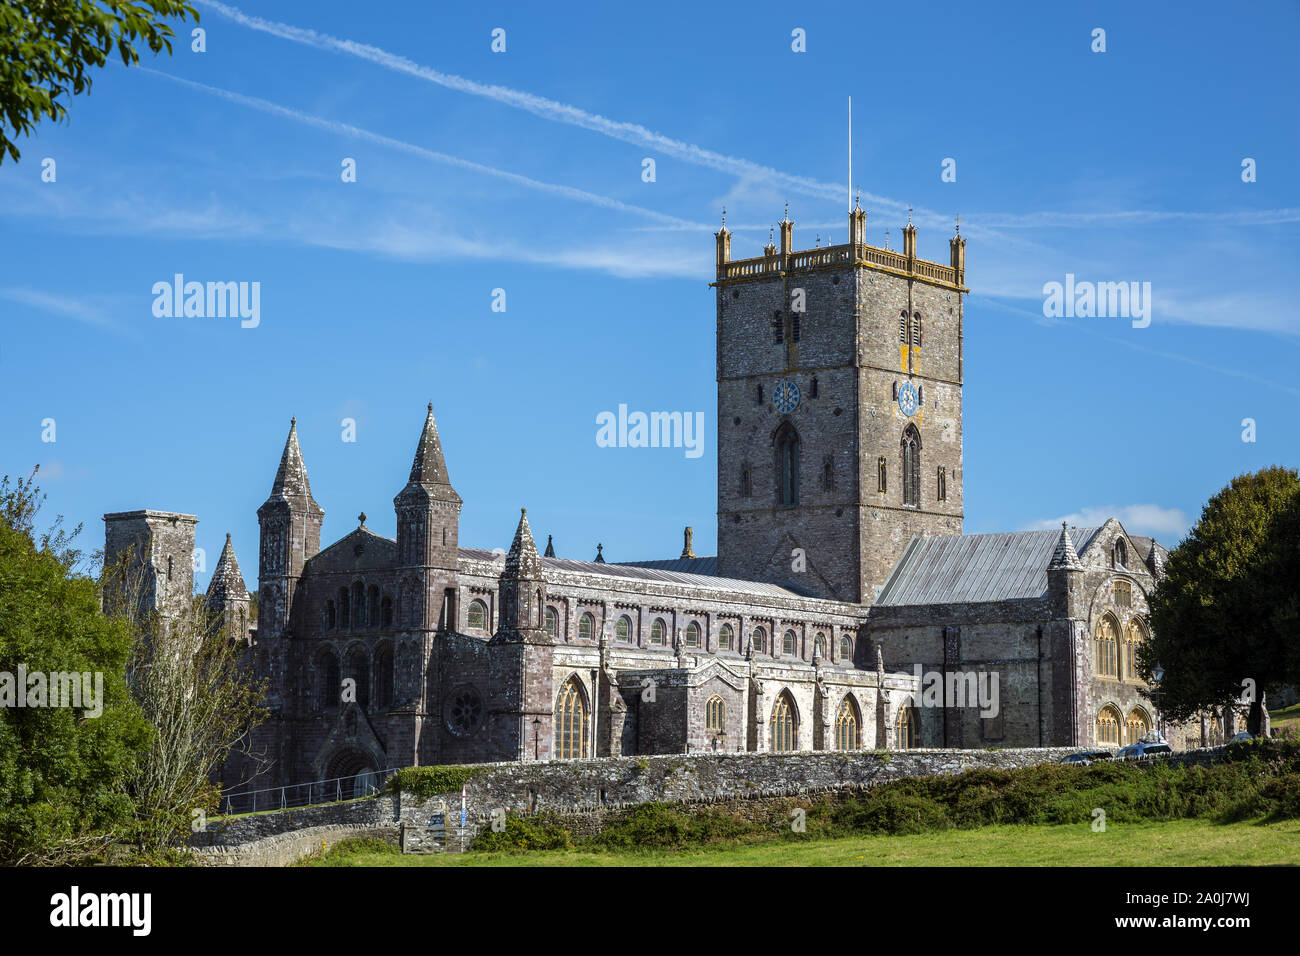 ST DAVID'S, PEMBROKESHIRE/UK - 13. SEPTEMBER: Blick auf die Kathedrale von St. David's in Pembrokeshire am 13. September 2019 Stockfoto